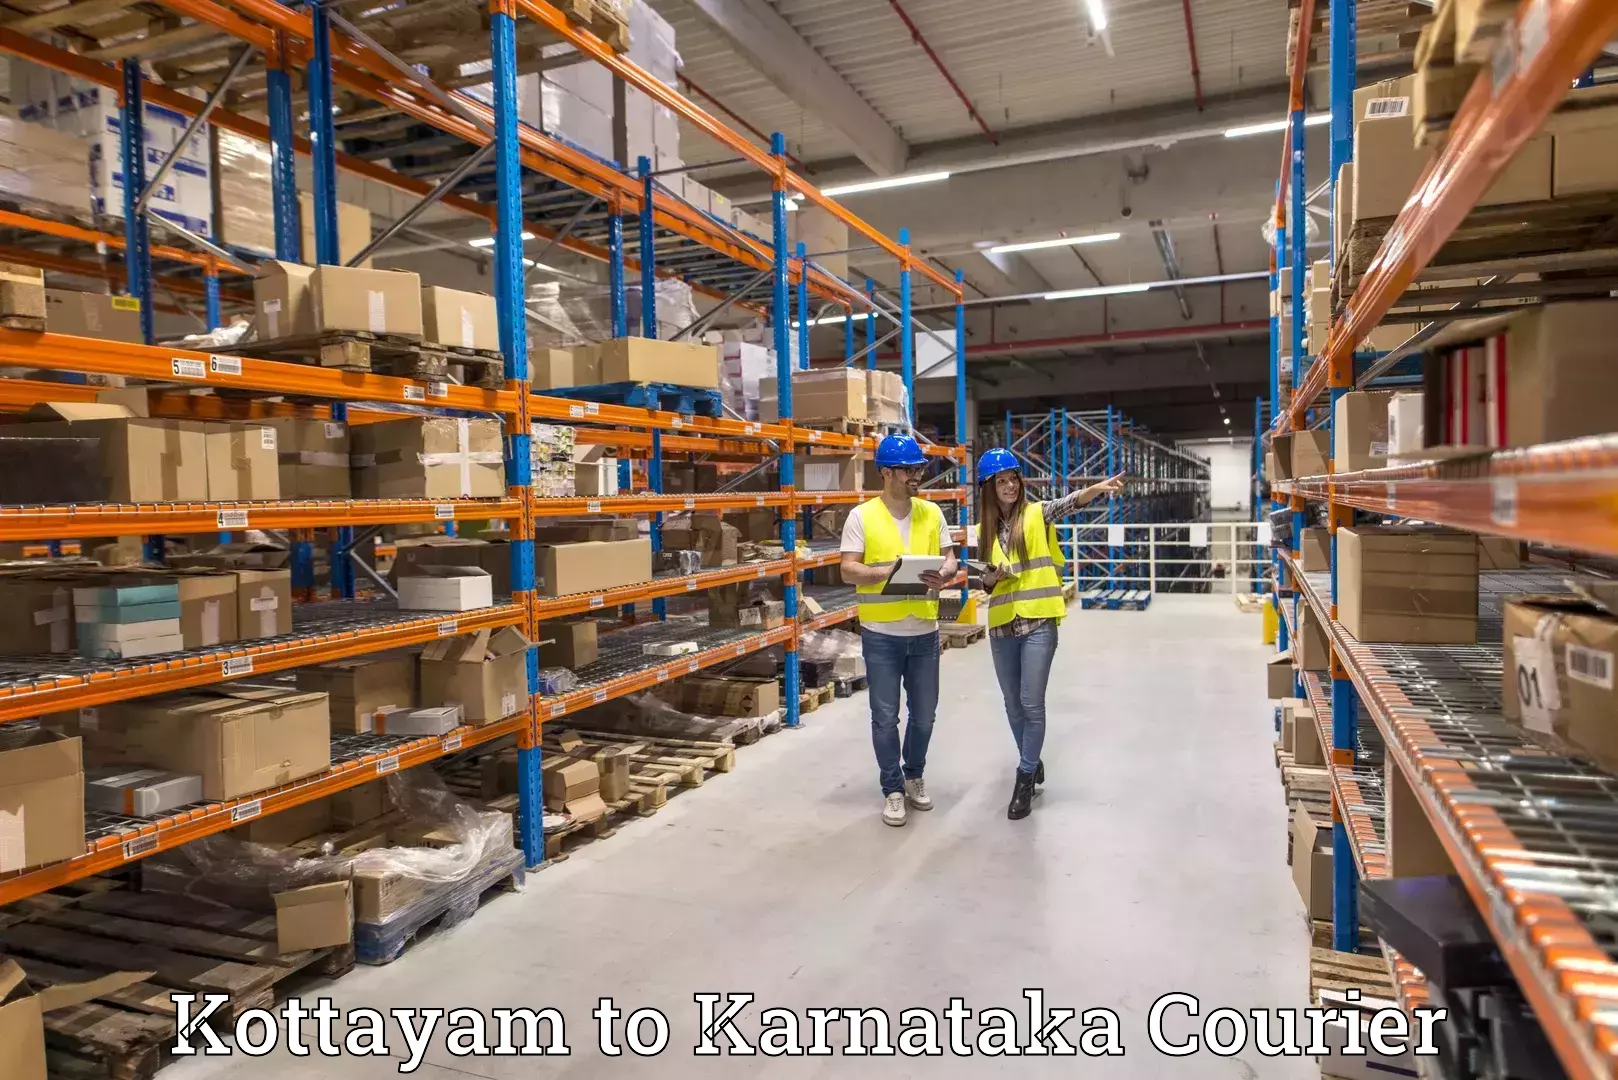 Custom courier packaging Kottayam to Karnataka